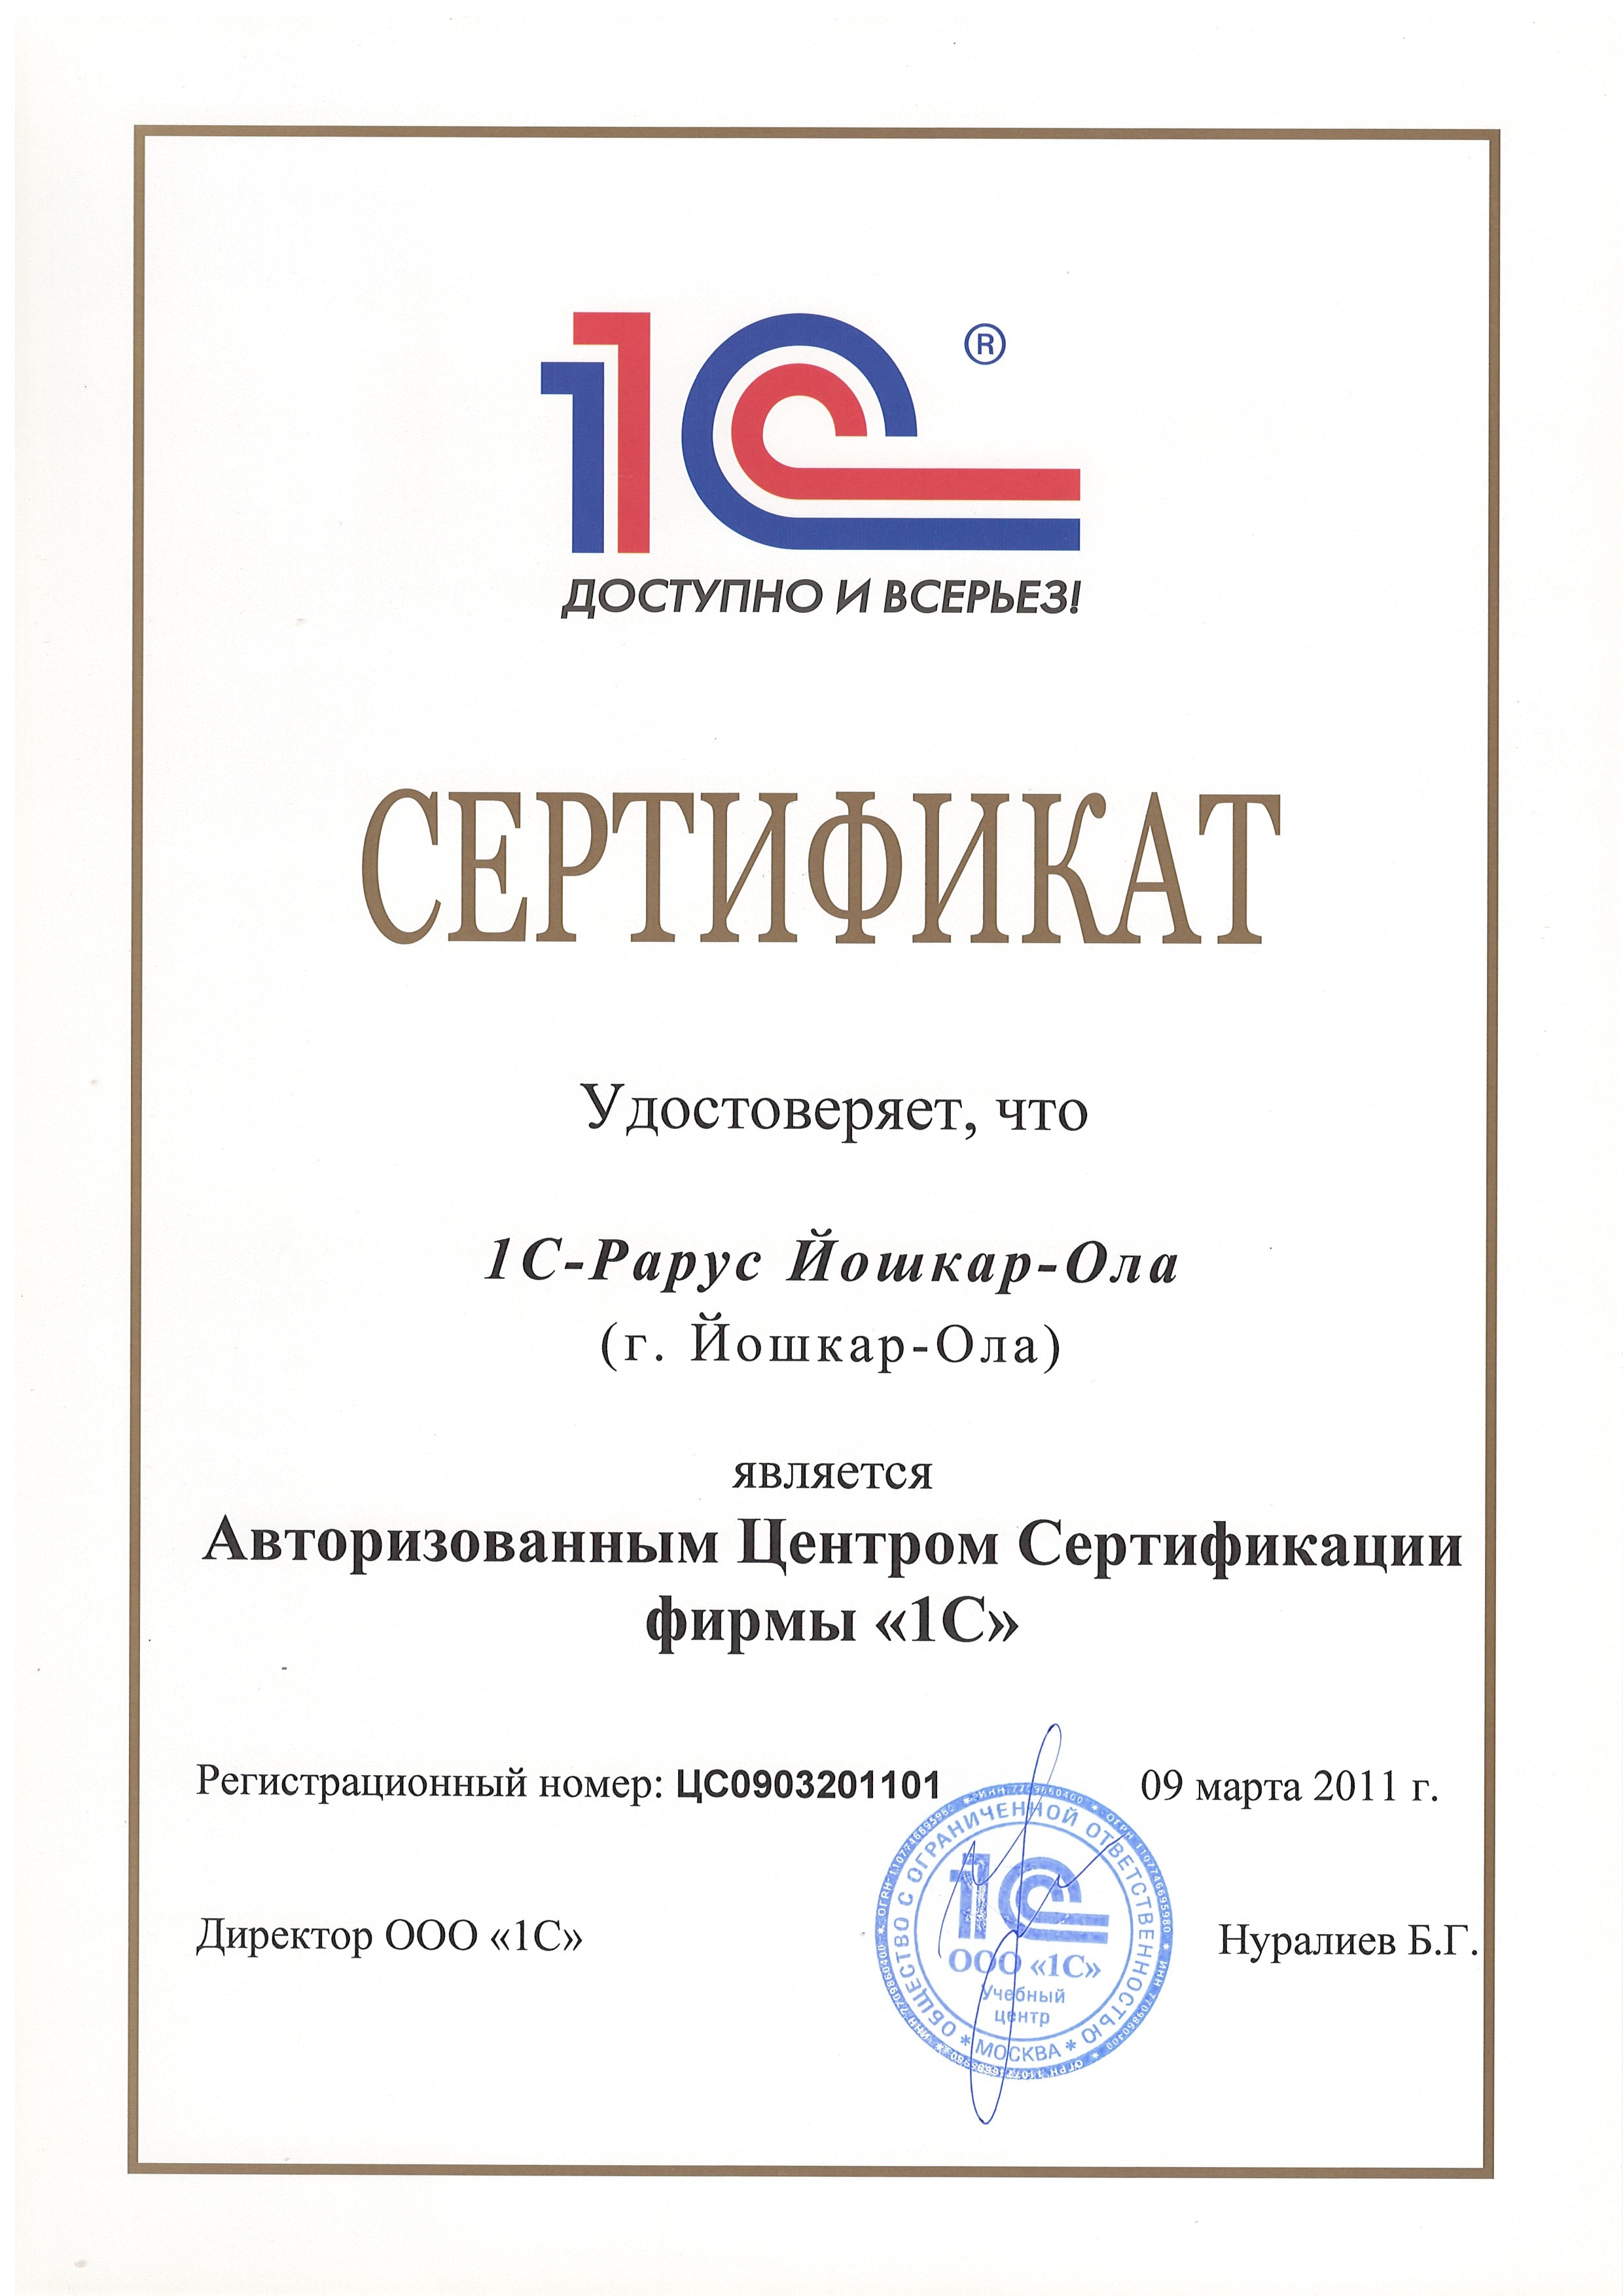 Сертификат удостоверяющий, что «1С-Рарус» является авторизованным центром сертификации фирмы «1С»